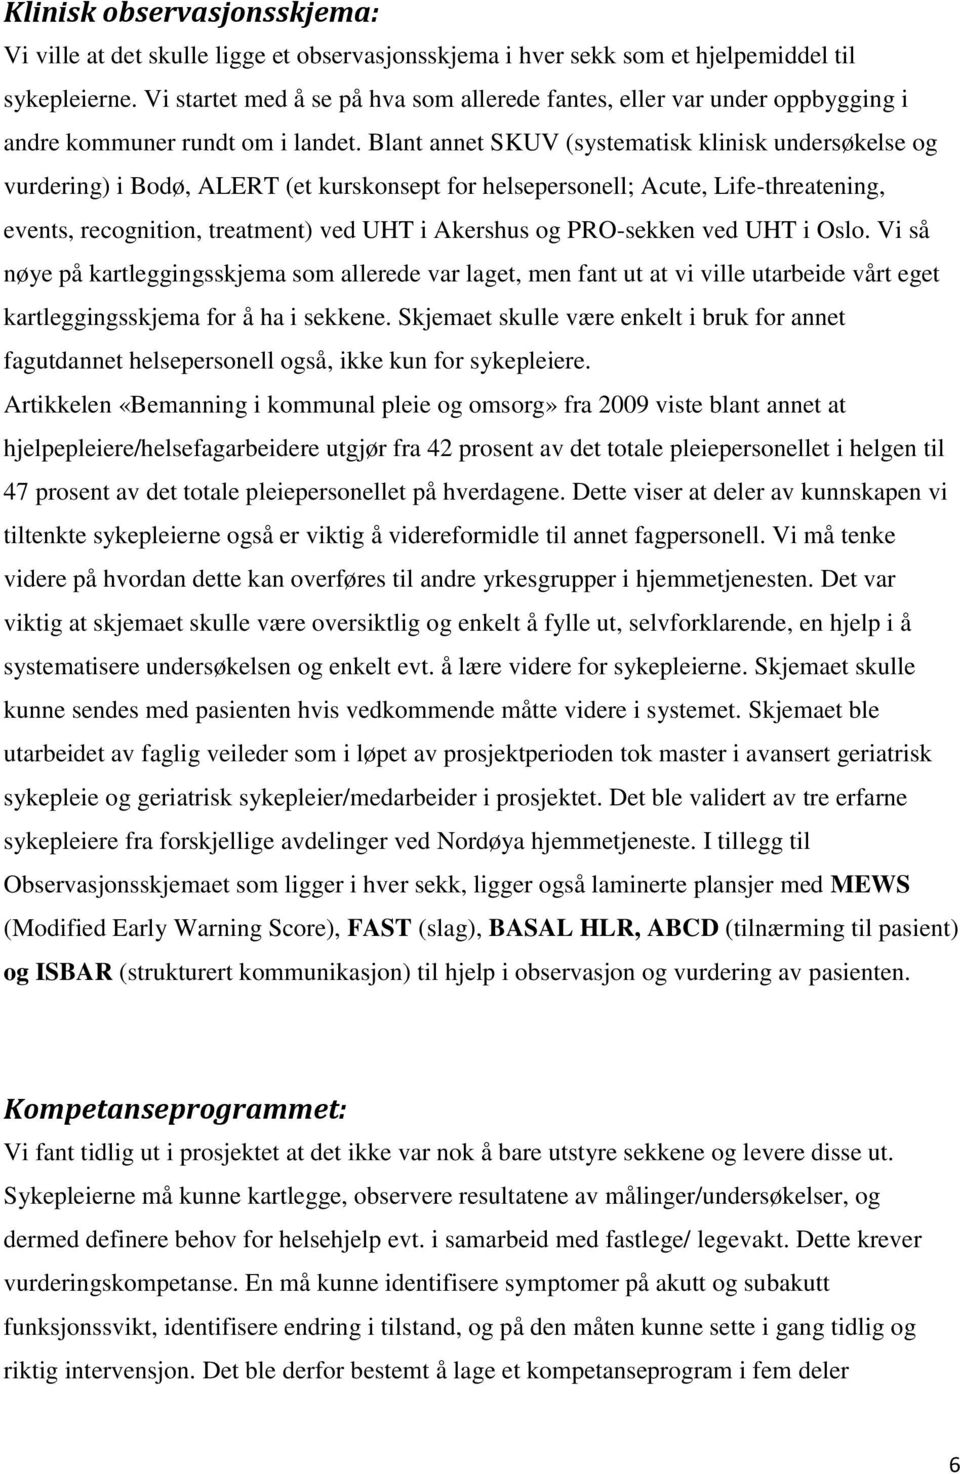 Blant annet SKUV (systematisk klinisk undersøkelse og vurdering) i Bodø, ALERT (et kurskonsept for helsepersonell; Acute, Life-threatening, events, recognition, treatment) ved UHT i Akershus og